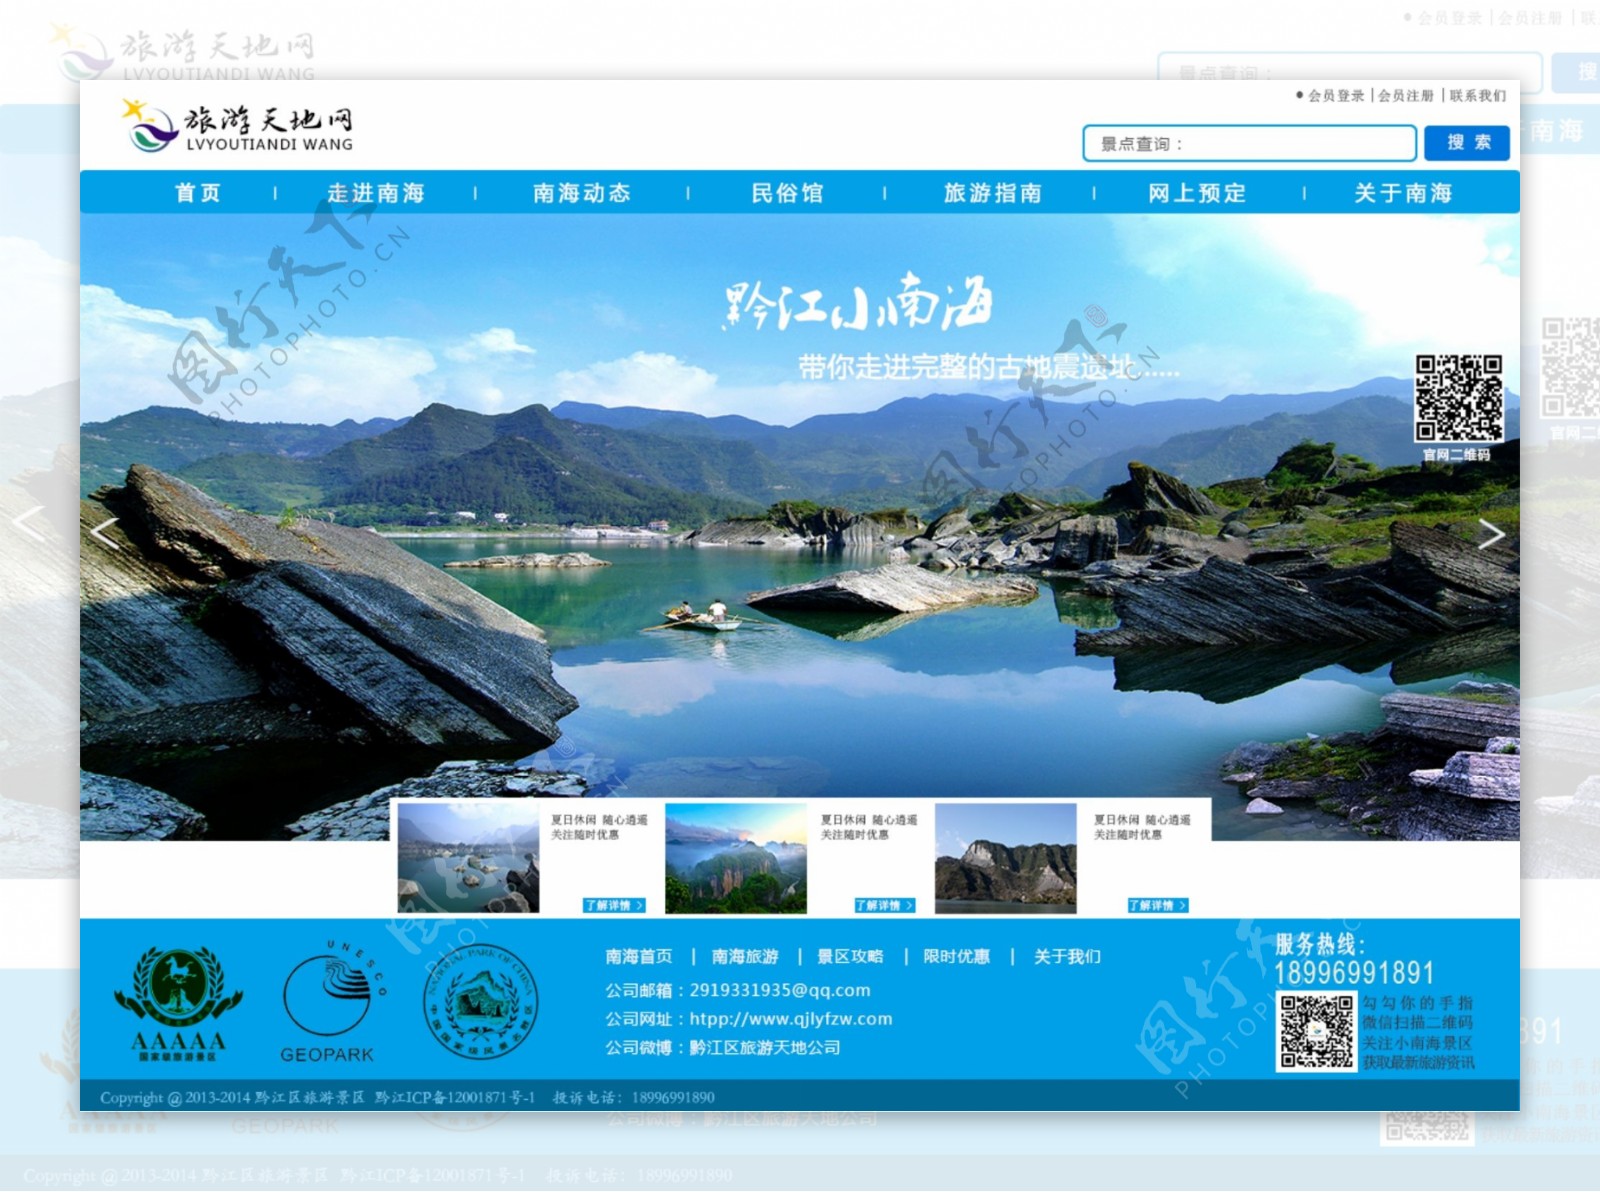 旅游网站原型UI设计网站首页格豪设计门户